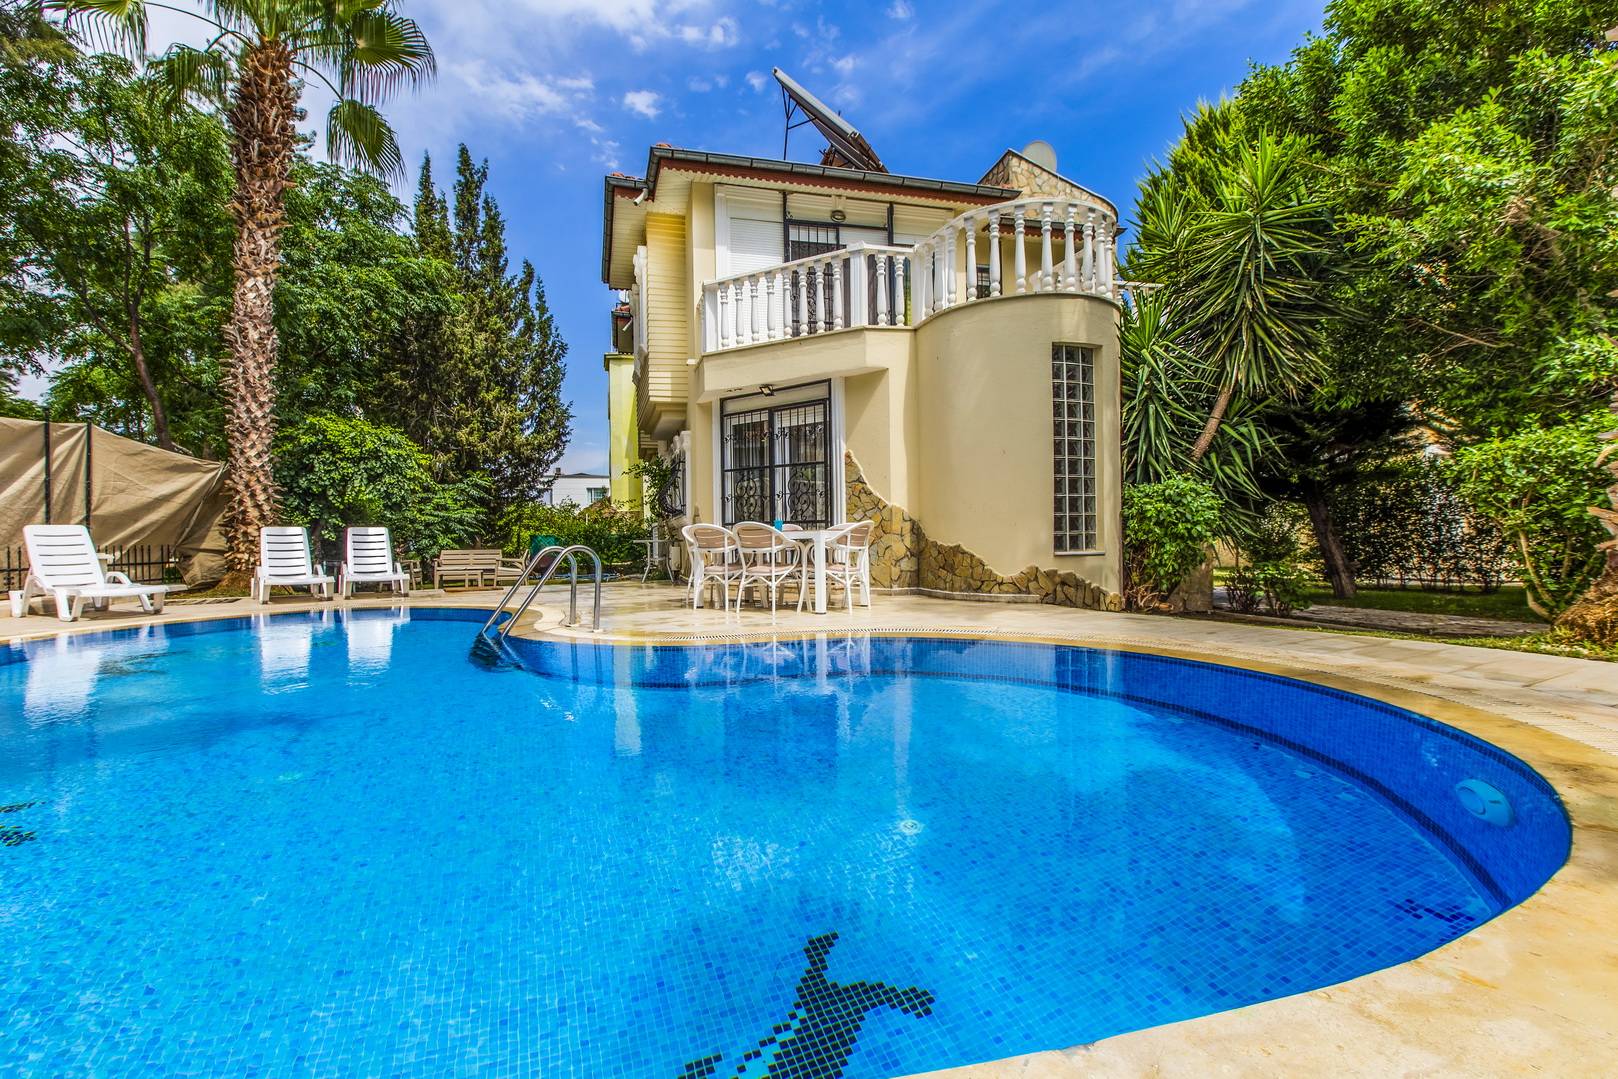 Antalya Belek'te Merkezi Konumda, Korunaklı Özel Havuzlu, Lüks Kiralık Villa